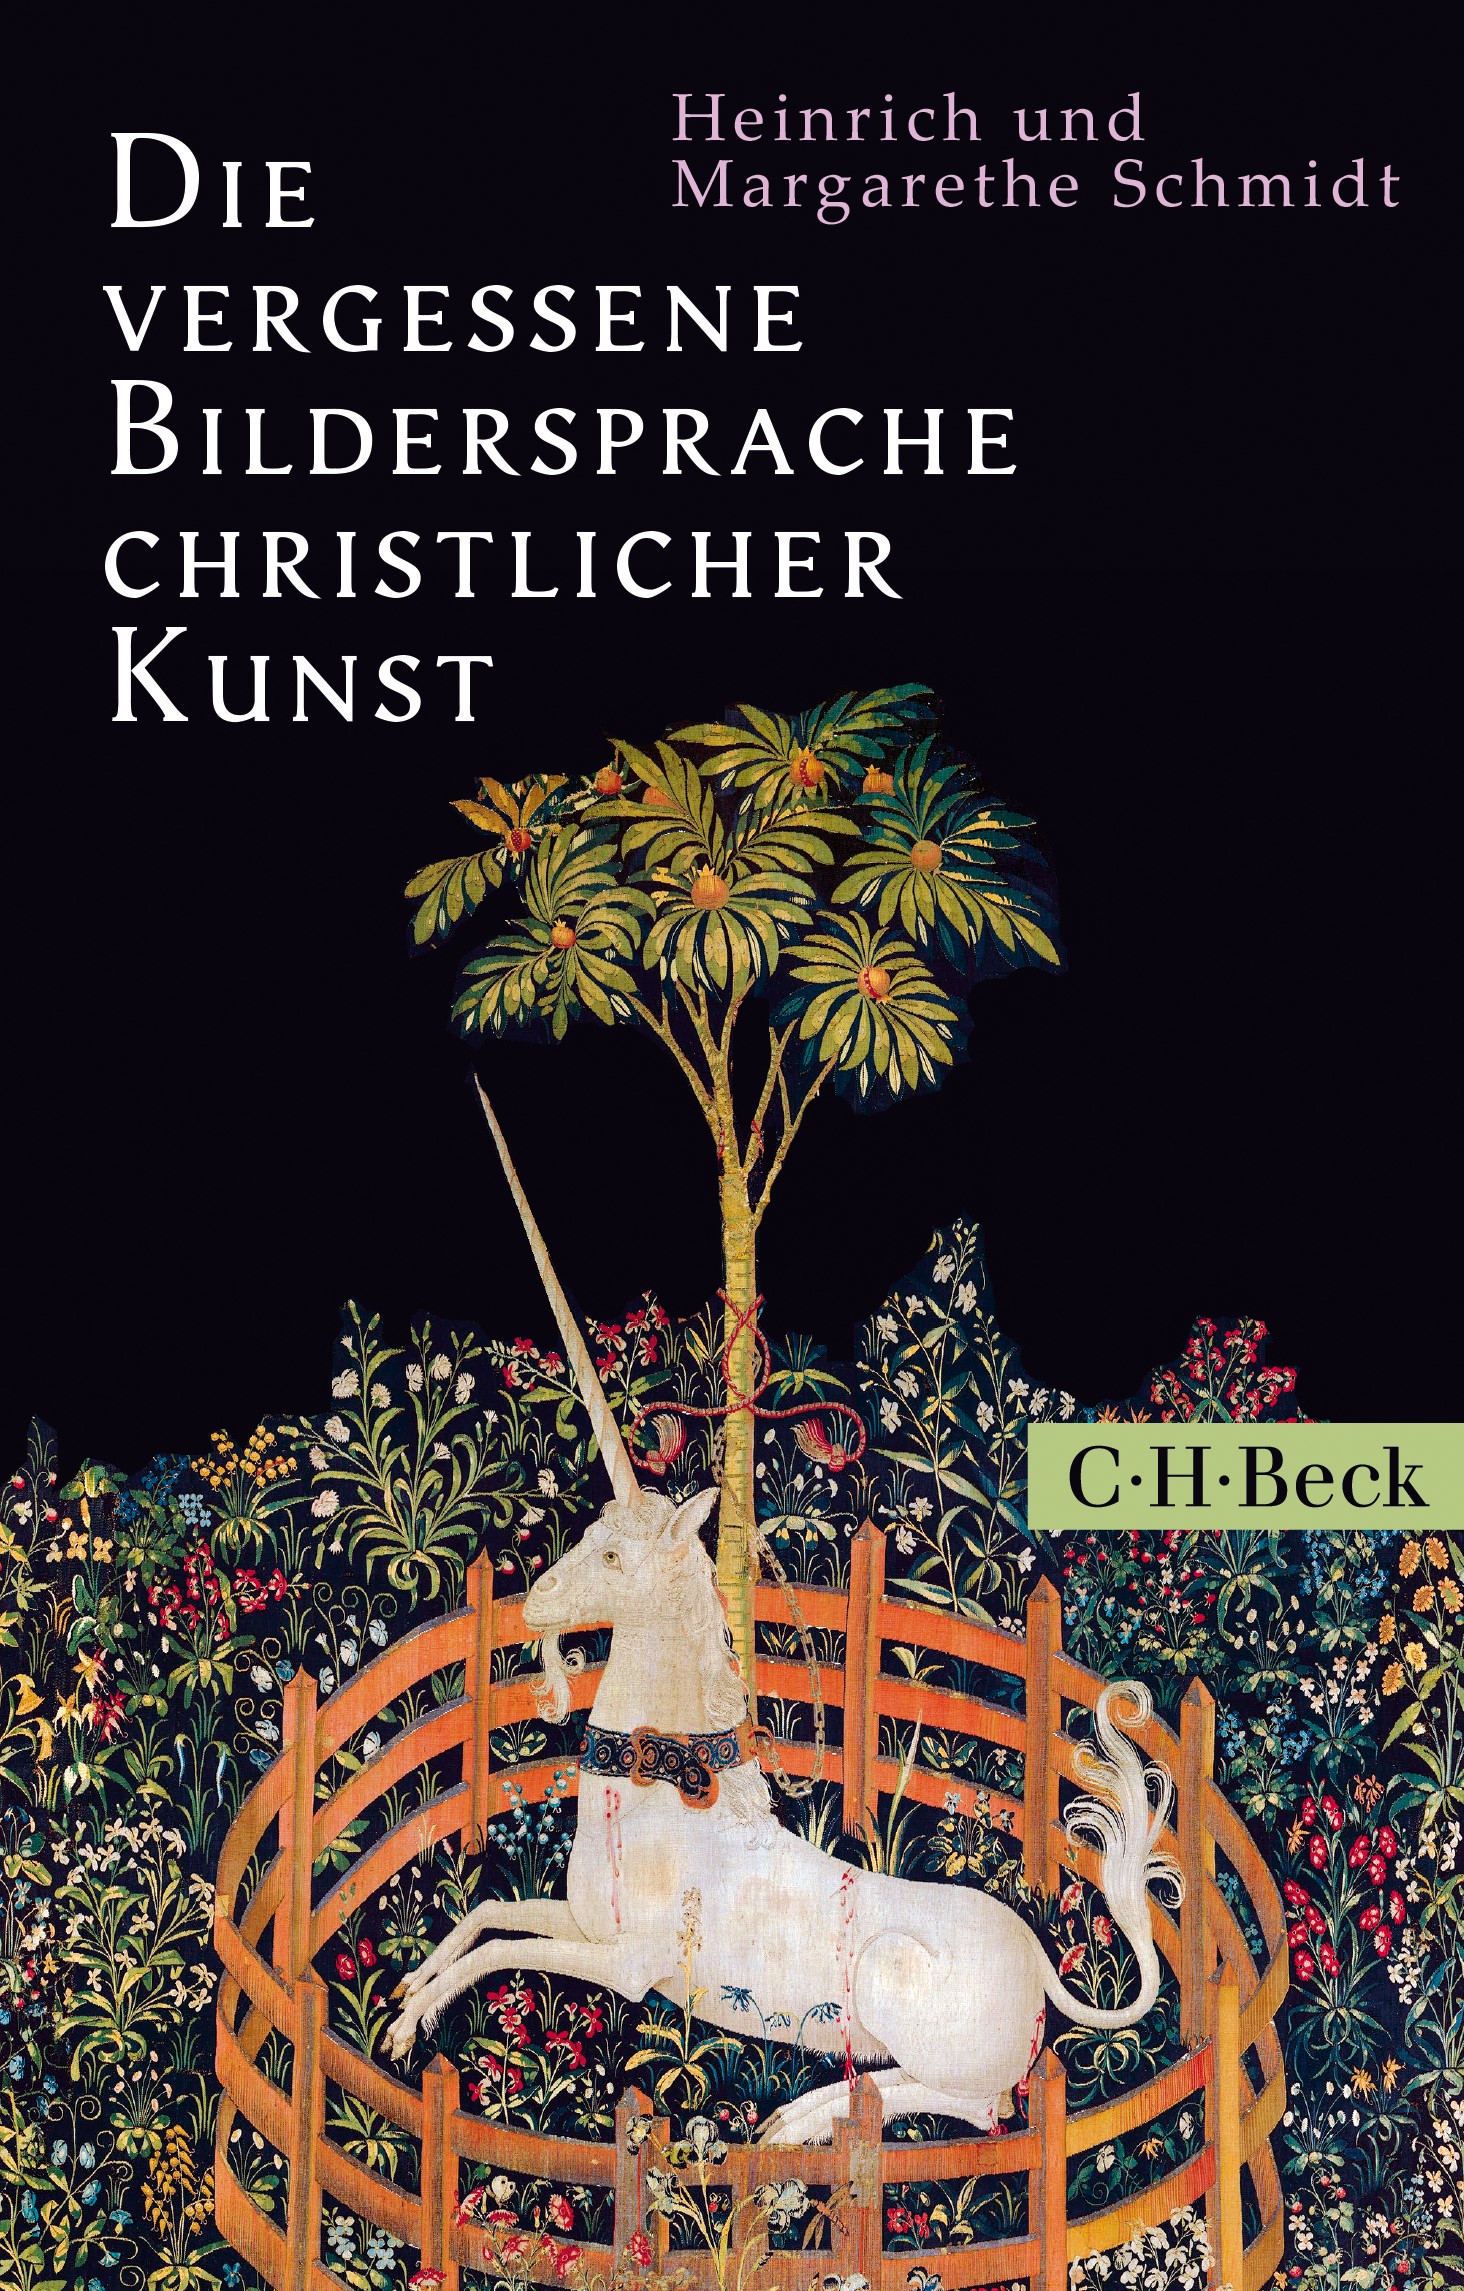 Cover: Schmidt, Margarethe / Schmidt, Heinrich, Die vergessene Bildersprache christlicher Kunst